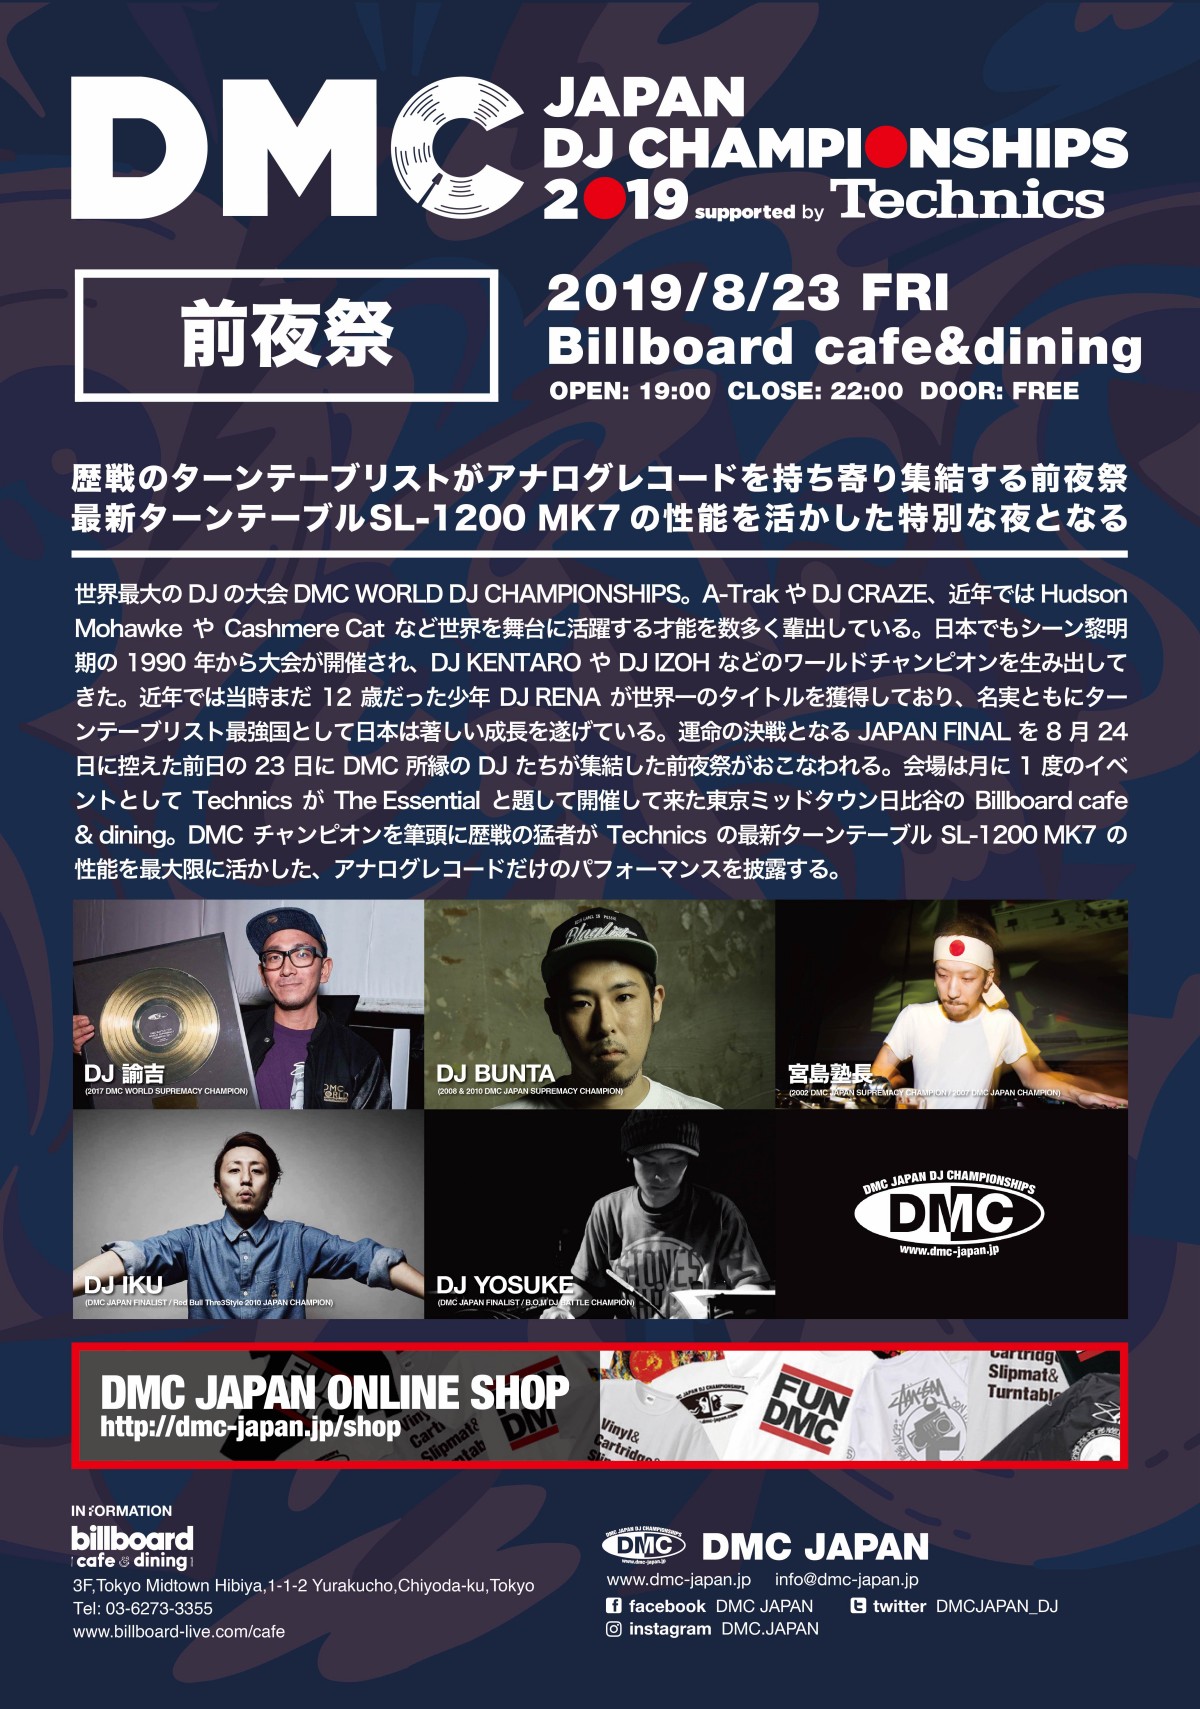 DMC JAPAN 2019>ファイナルの全容が公開 各部門ファイナリストが決定